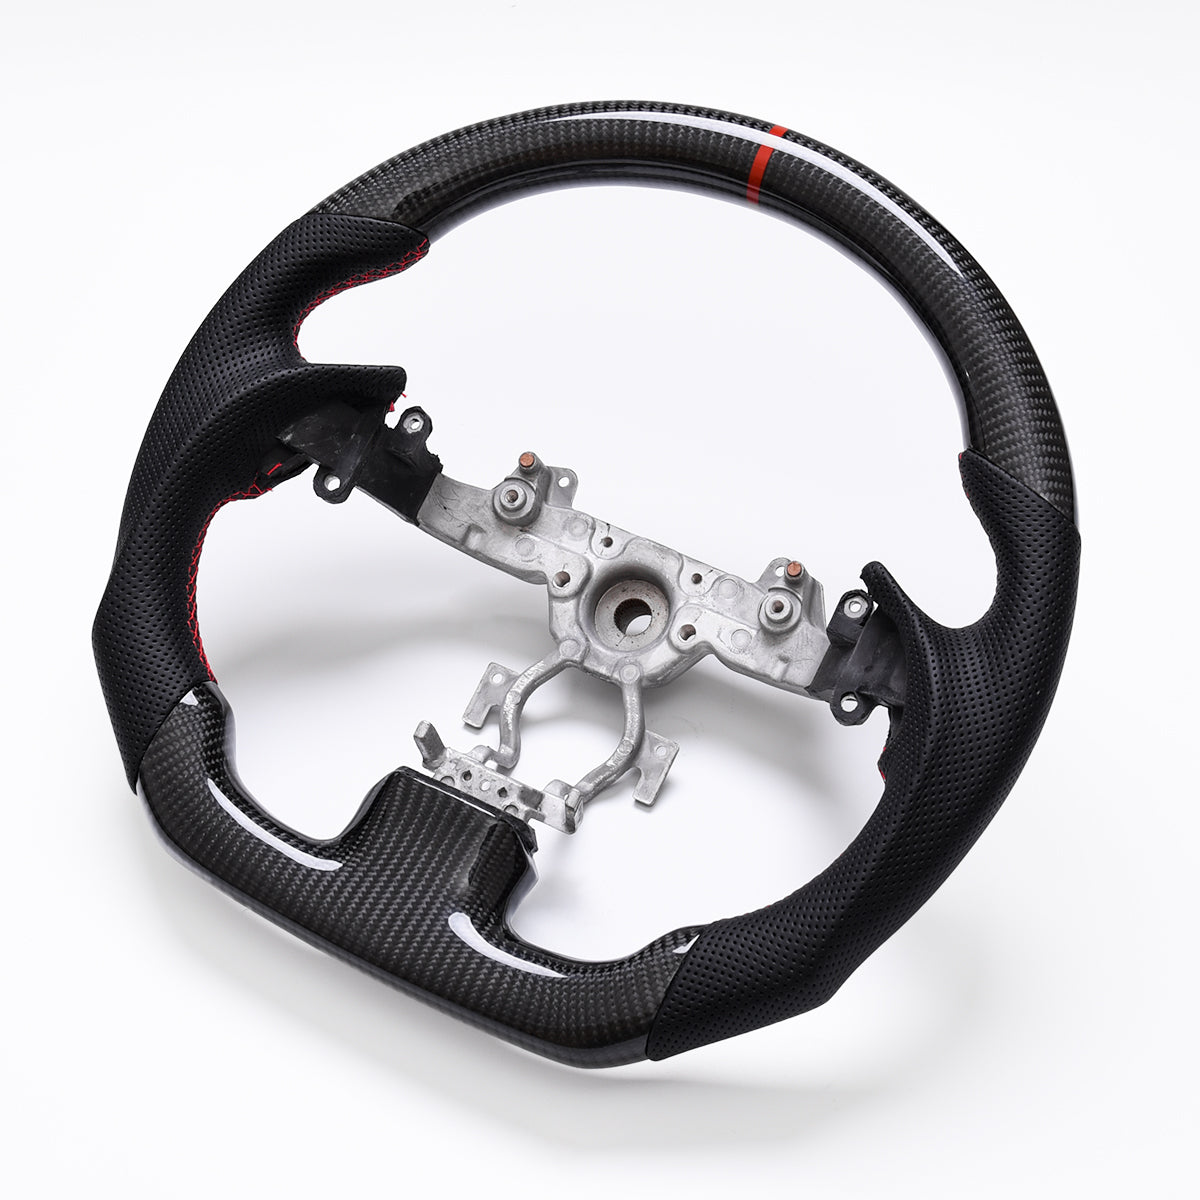 Revolve Carbon Fiber OEM Steering Wheel | Infiniti G37 2008-2013 - revolvesteering